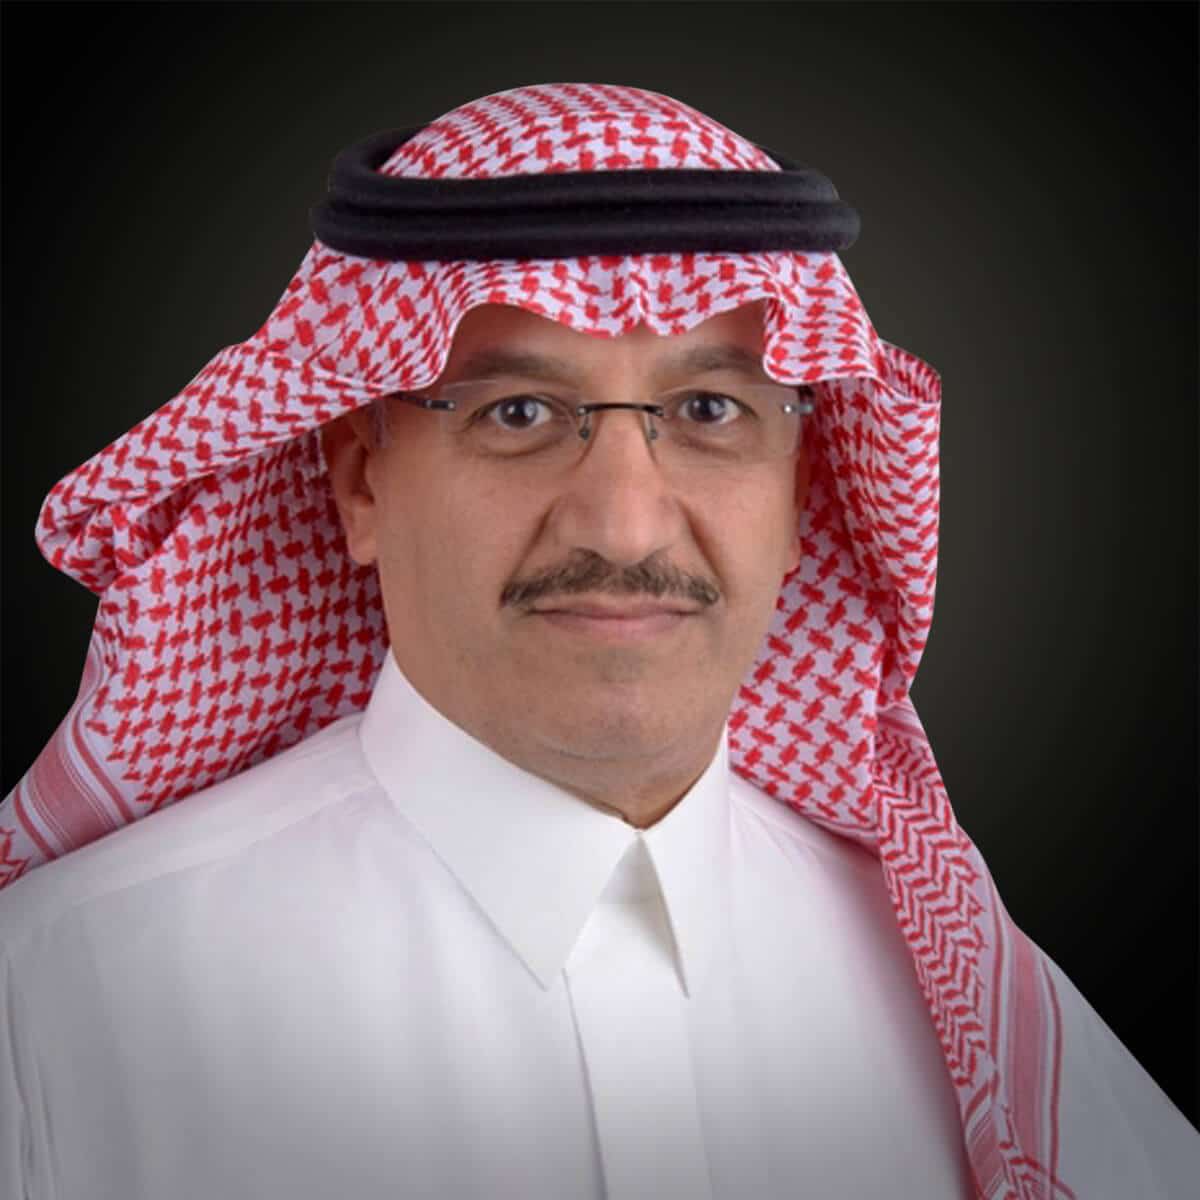 عُيّن بأمر ملكي.. تعرف على وزير التعليم السعودي الجديد alarabtrend.com